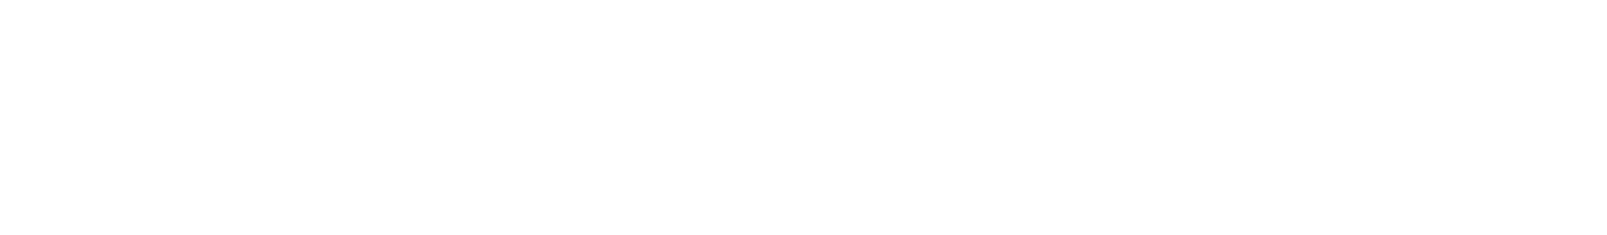 SafeRide Health logo-FULL ALL WHITE